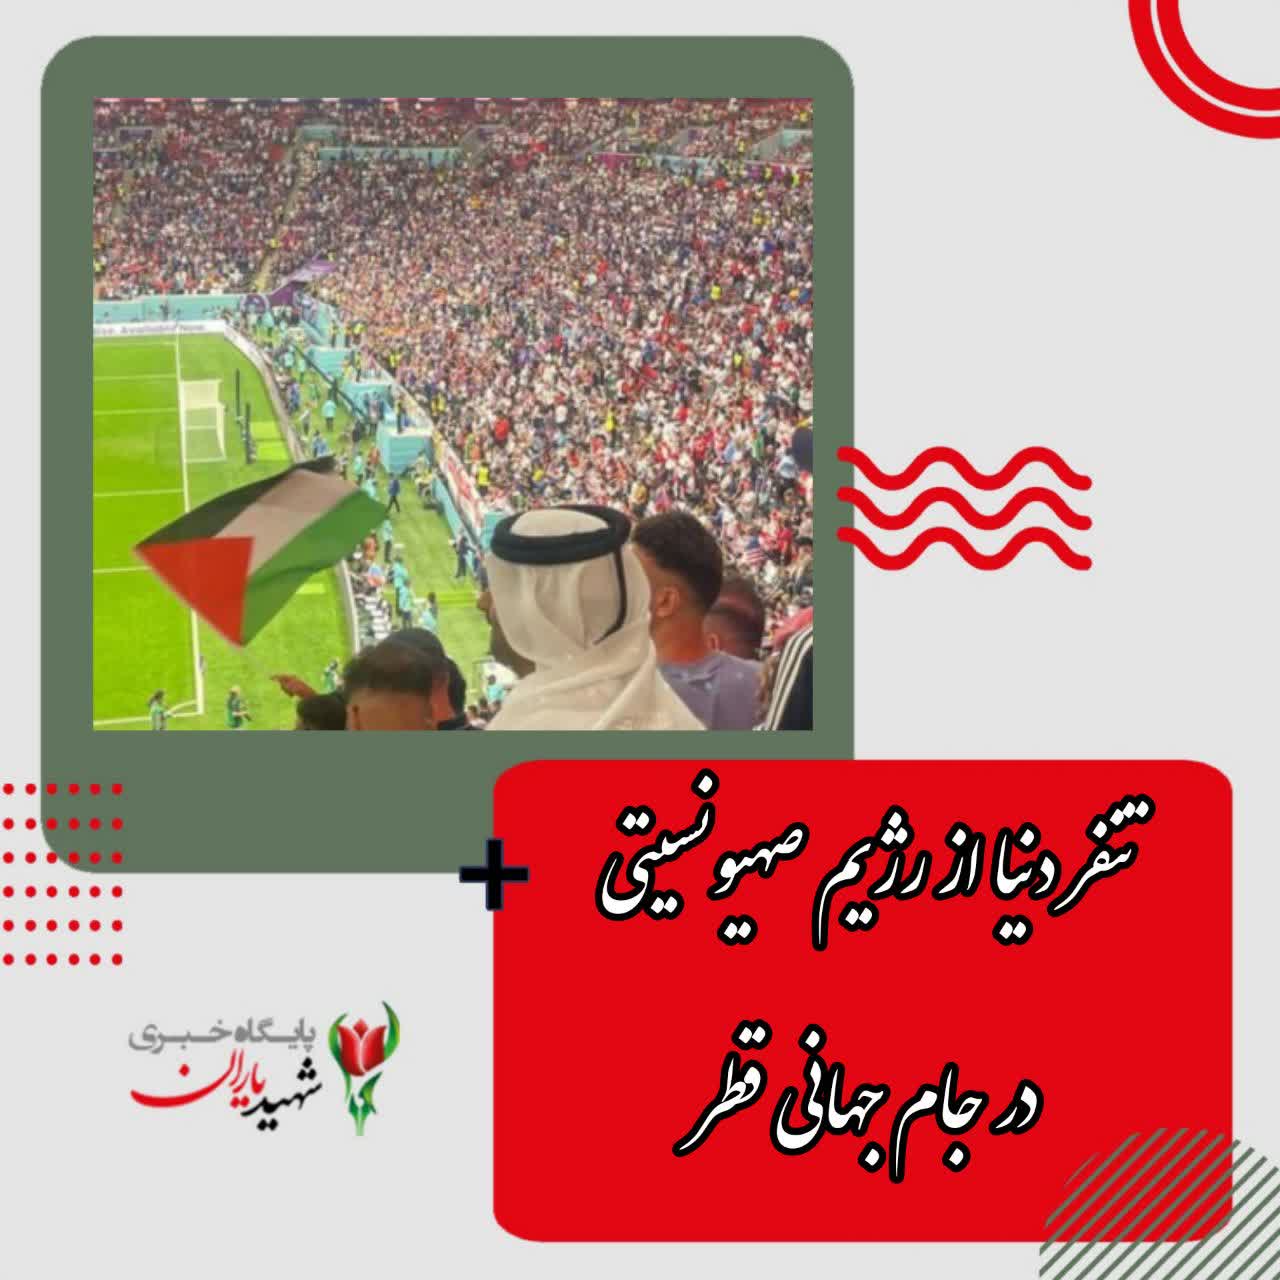 تنفر دنیا از رژیم صهیونسیتی در جام جهانی قطر